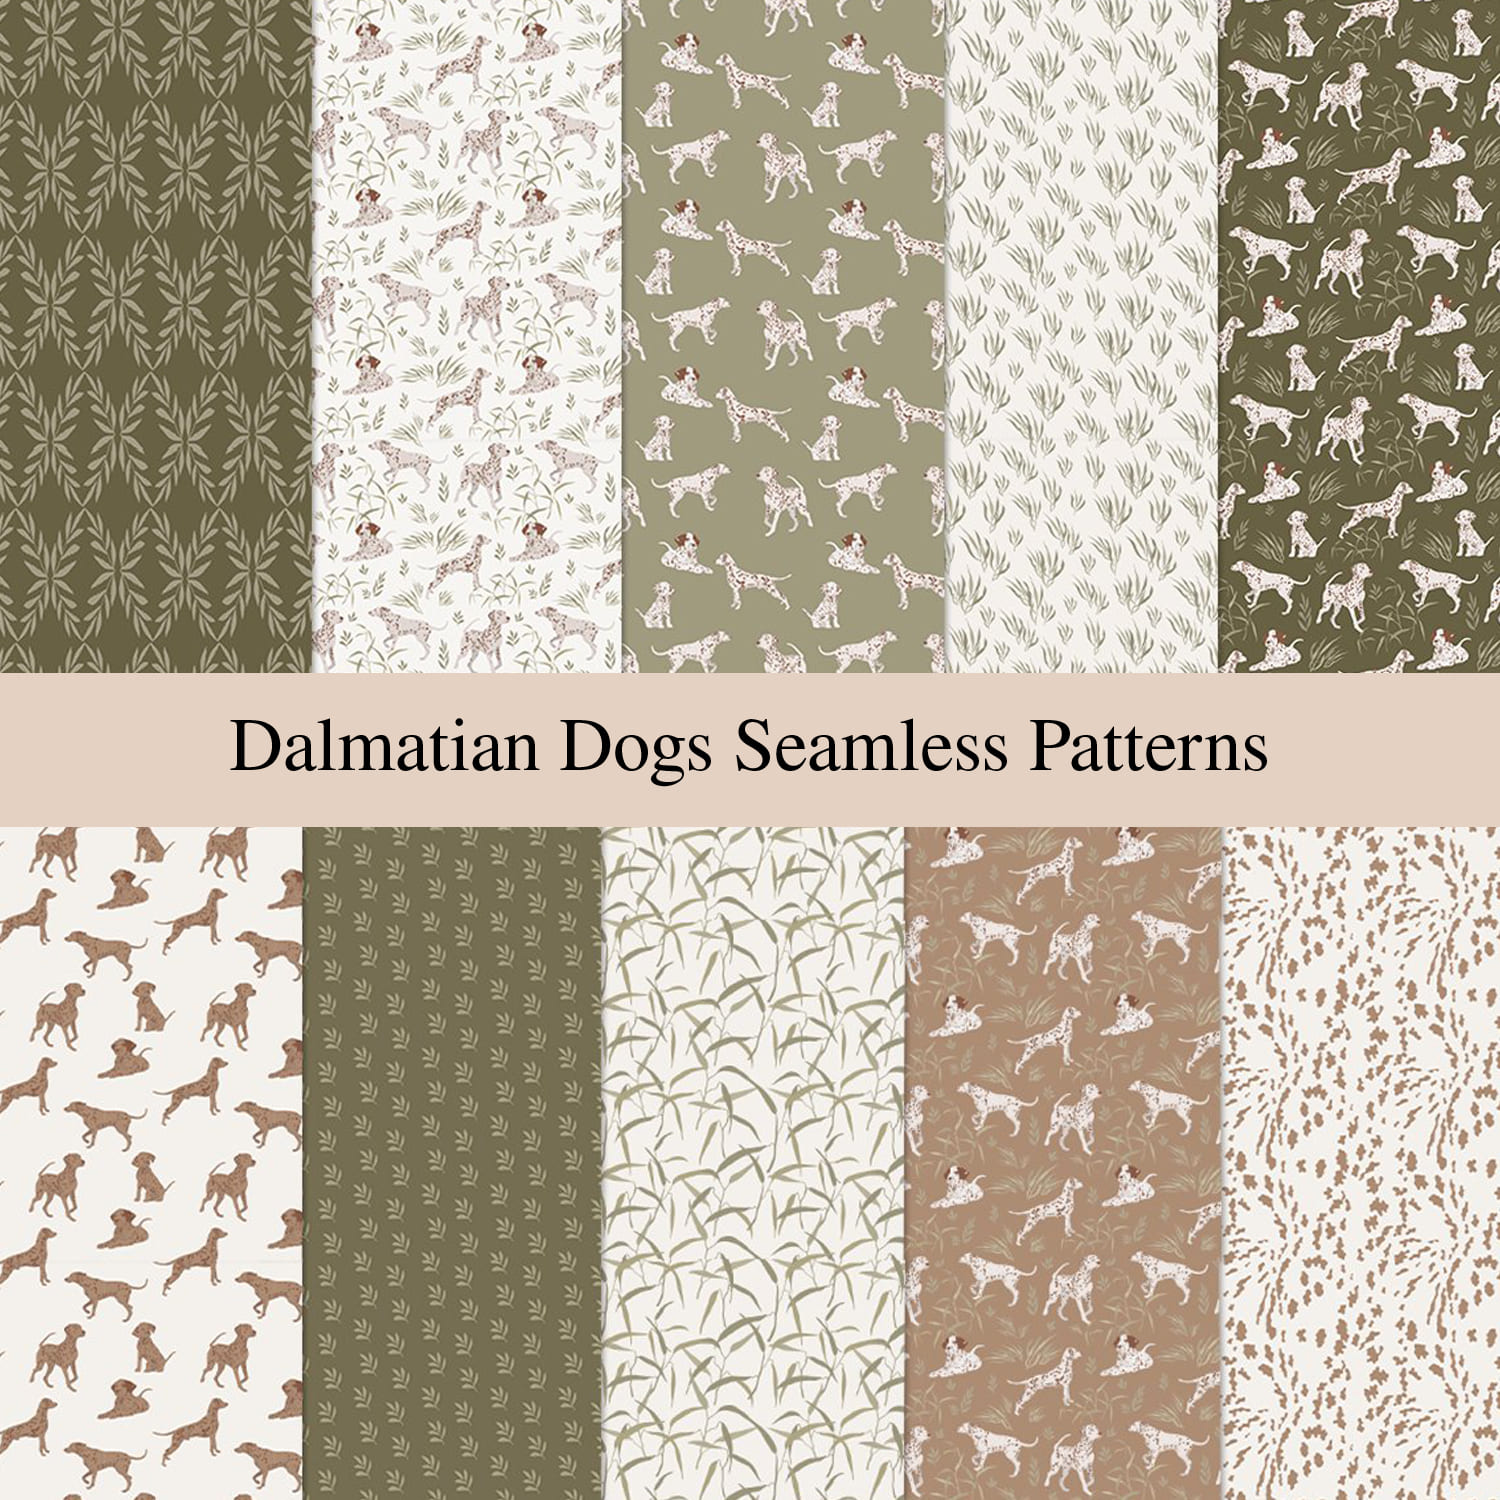 Dalmatian Dogs Seamless Patterns.